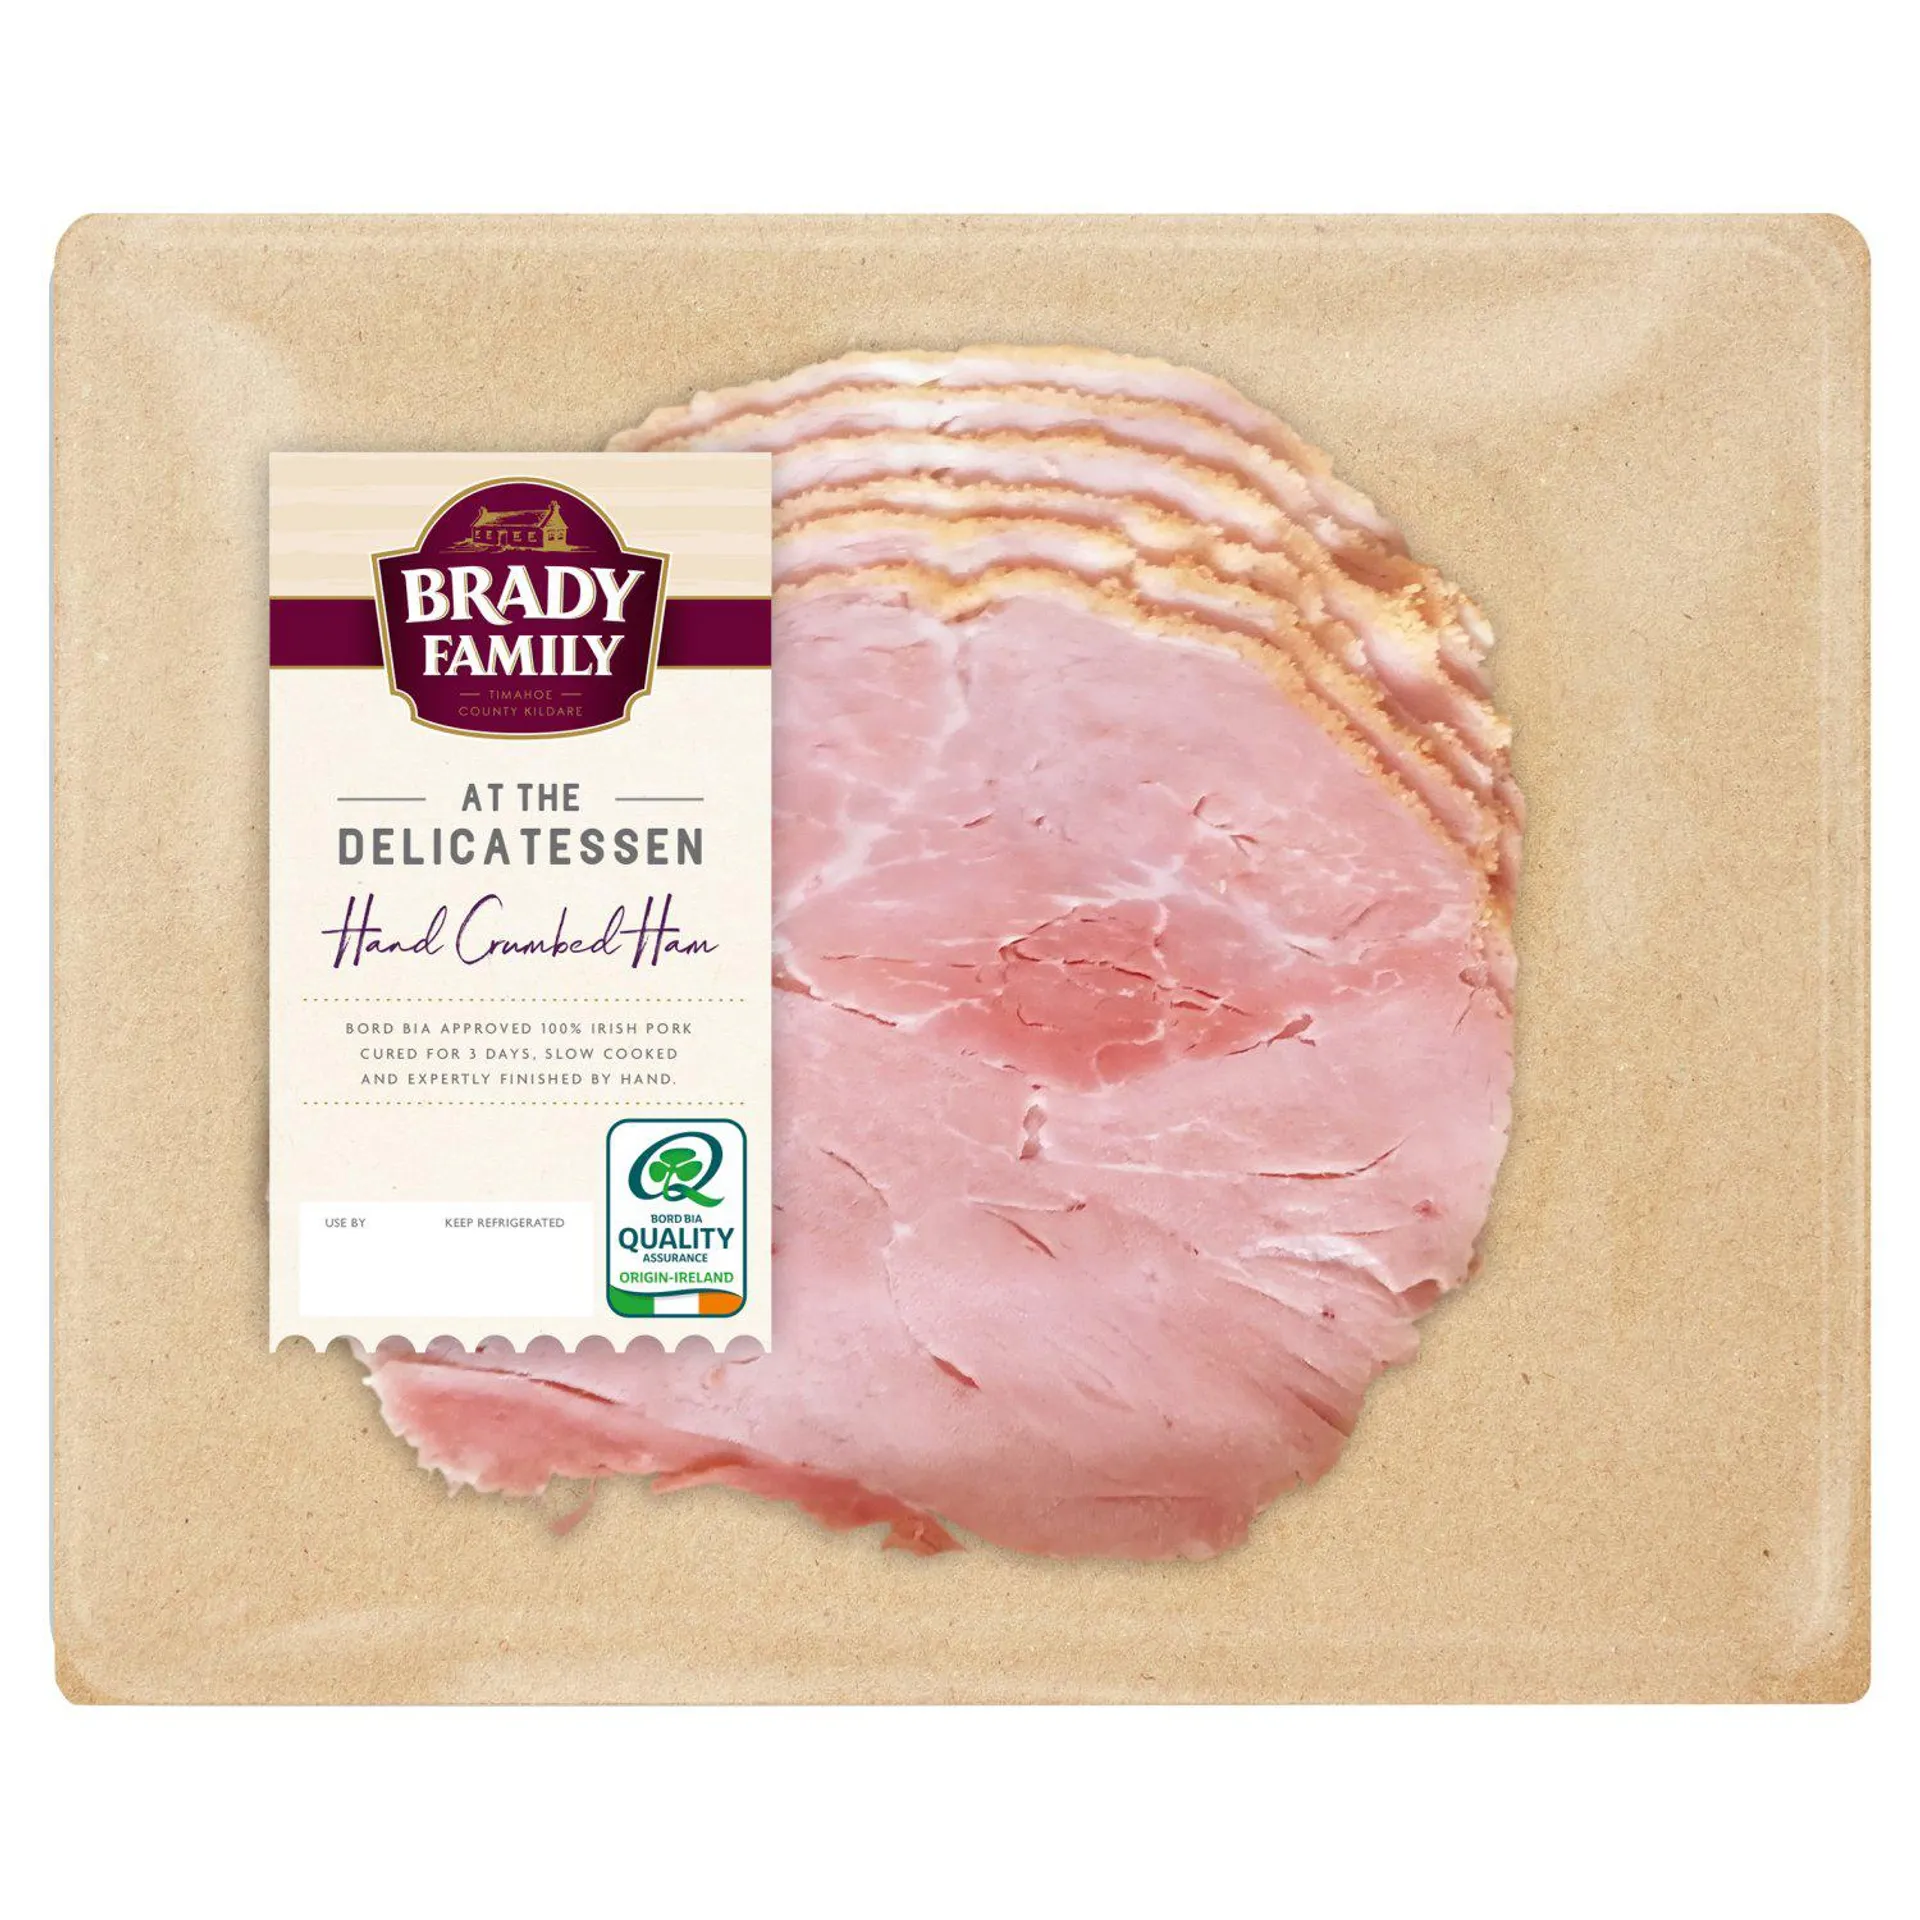 Brady Family At the Deli Crumbed Ham (120 g)